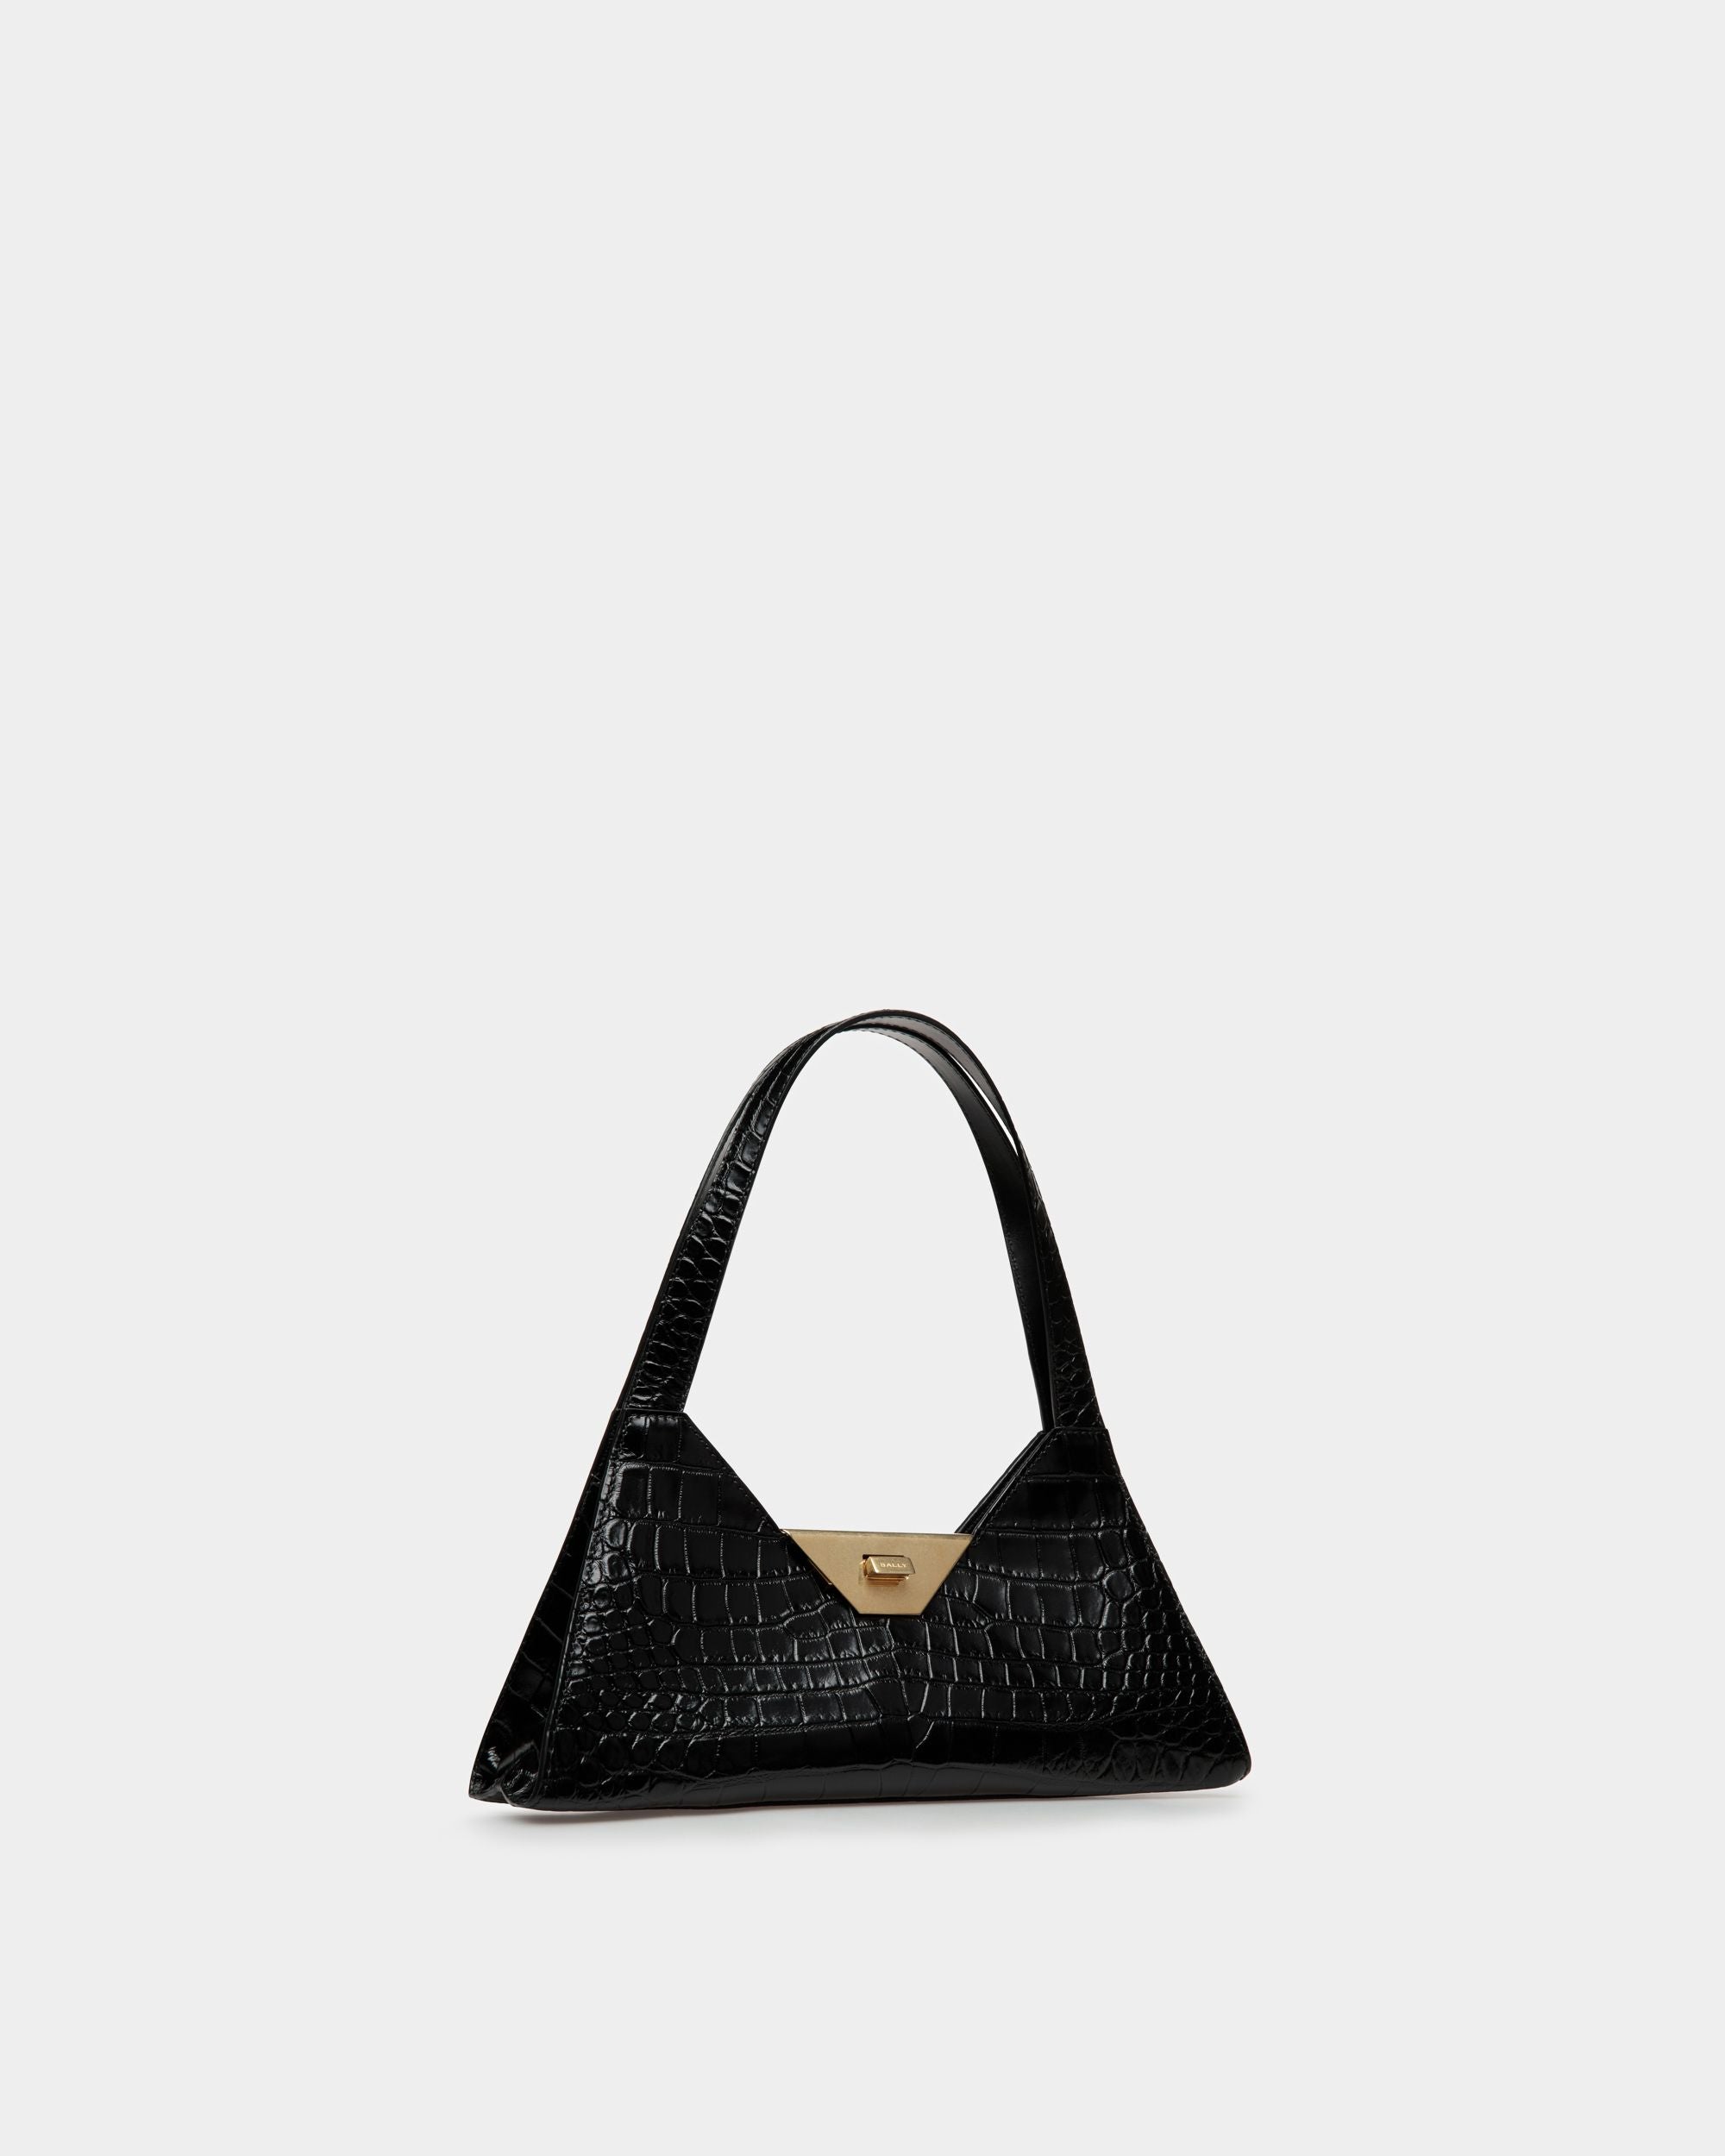 Trilliant Small Shoulder Bag | Women's Shoulder Bag | Black Leather | Bally | Still Life 3/4 Front